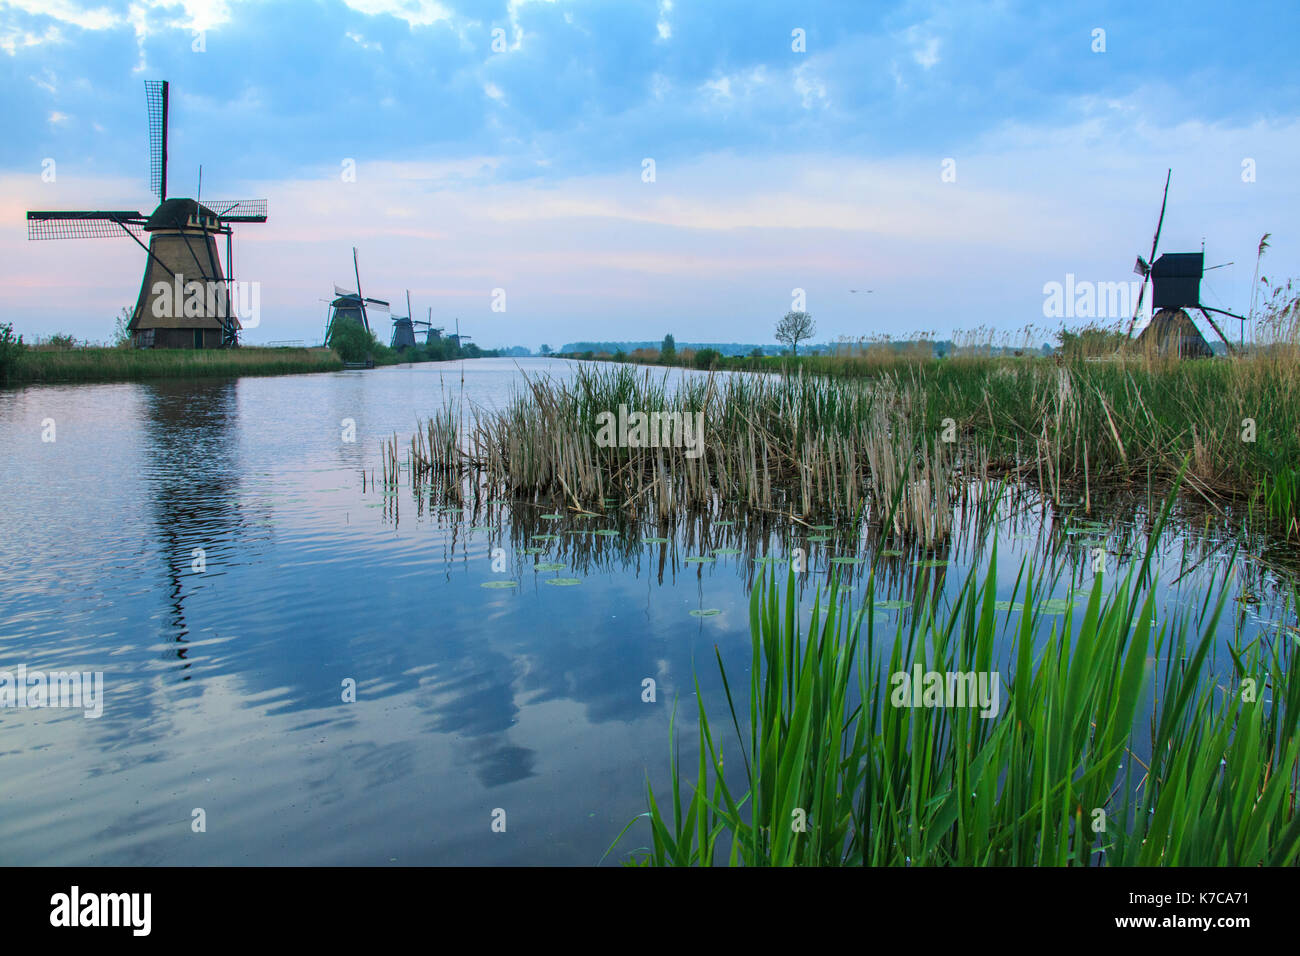 Les moulins à vent les trames de l'herbe verte reflétée dans le canal à l'aube kinderdijk rotterdam Pays-Bas Hollande du Sud Europe Banque D'Images